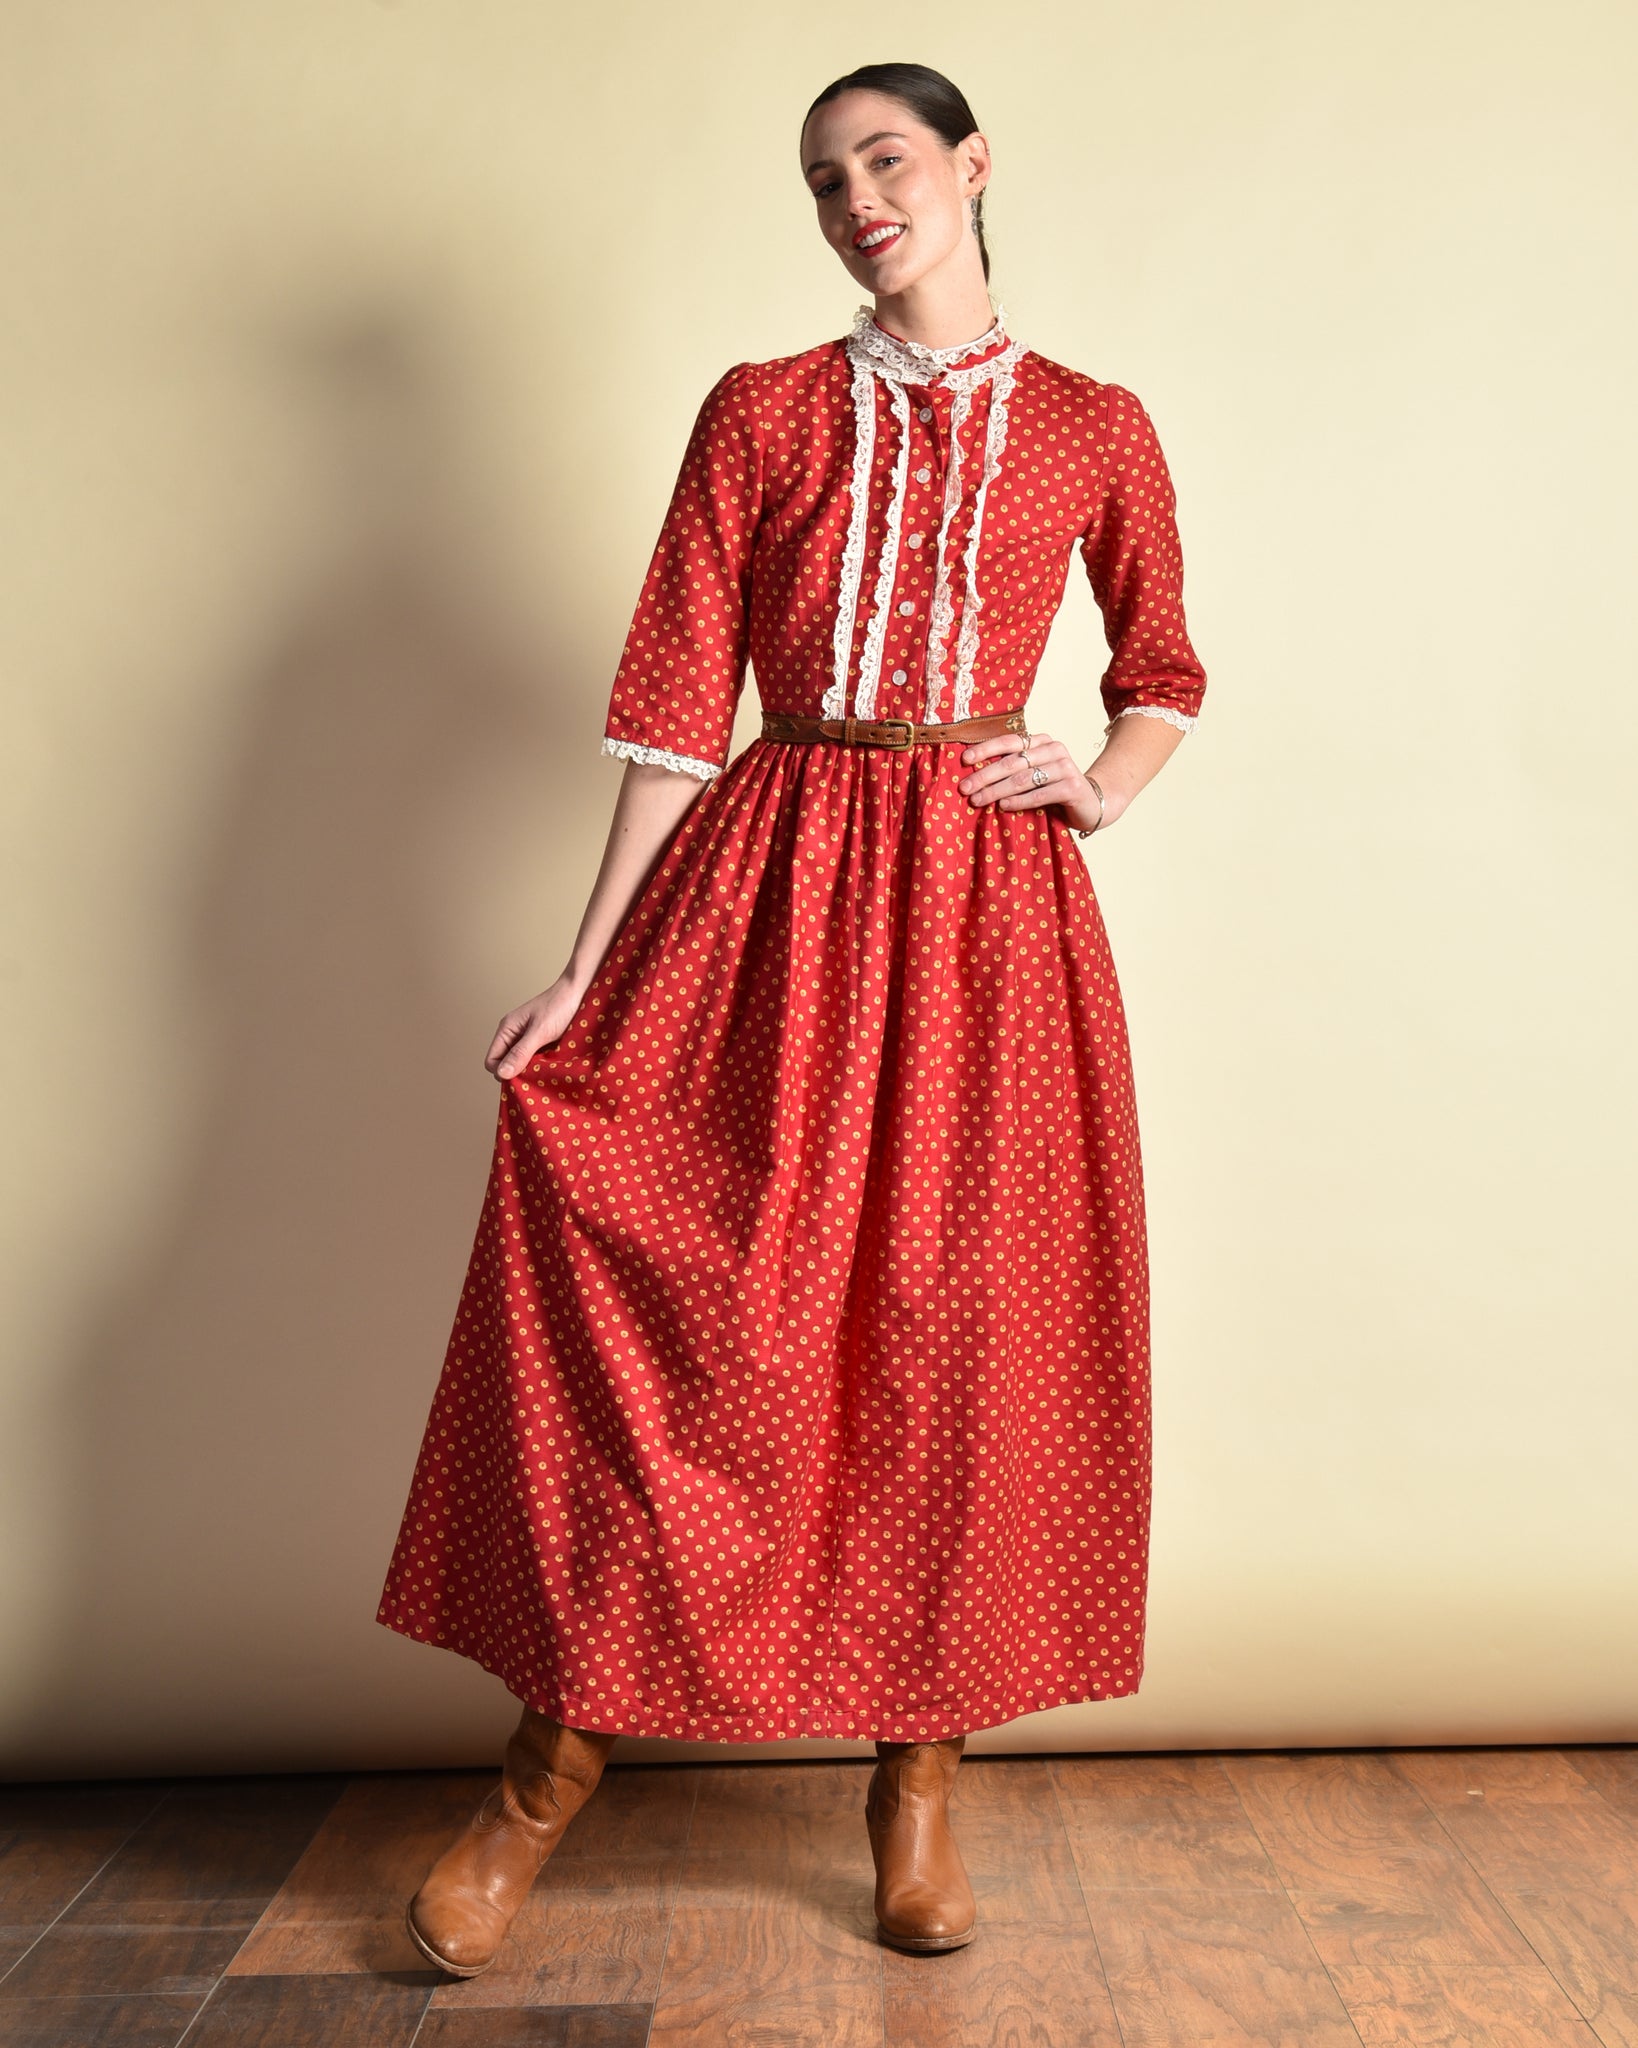 Lucinda 1940s Cotton Prairie Dress